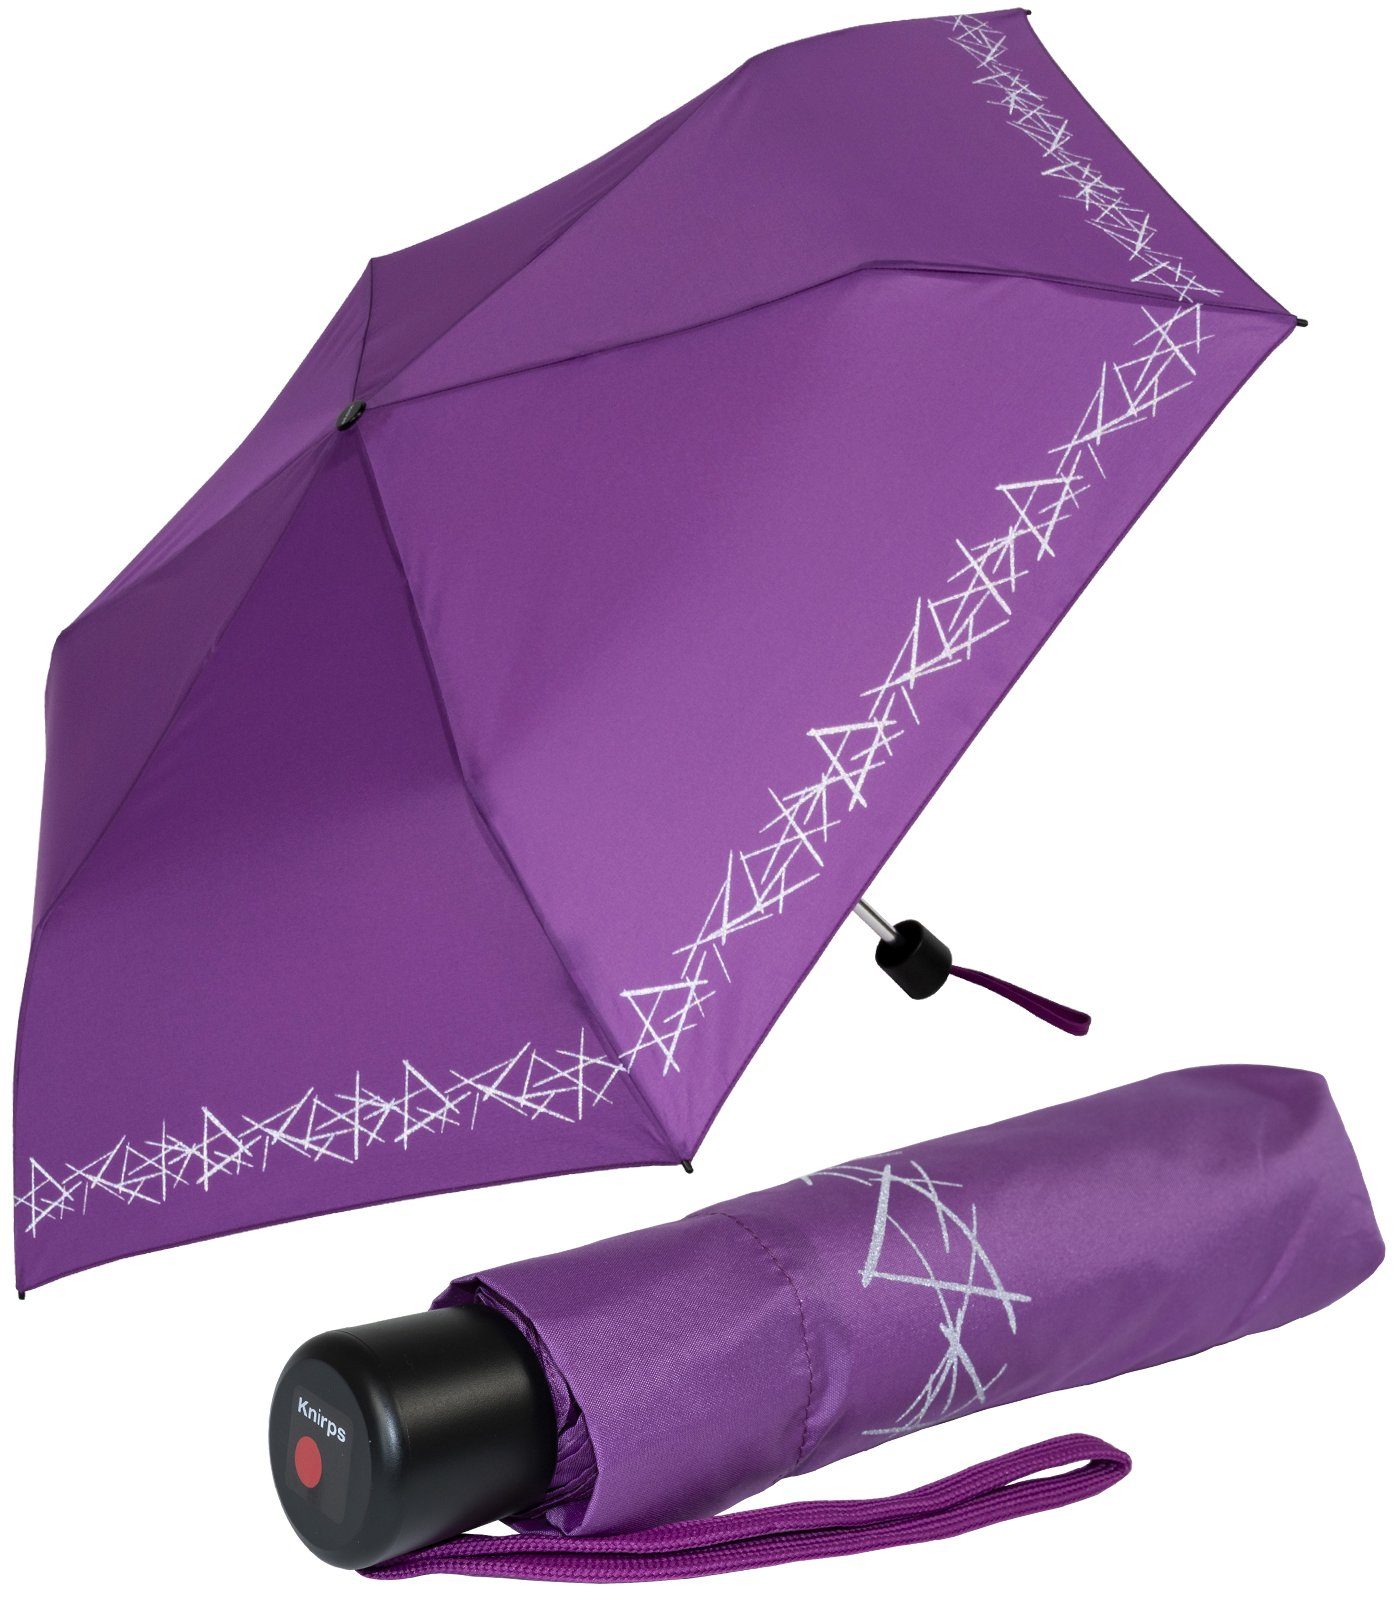 Knirps® Taschenregenschirm Kinderschirm 4Kids reflective mit Reflexborte, Sicherheit auf dem Schulweg, leicht, uni, lila